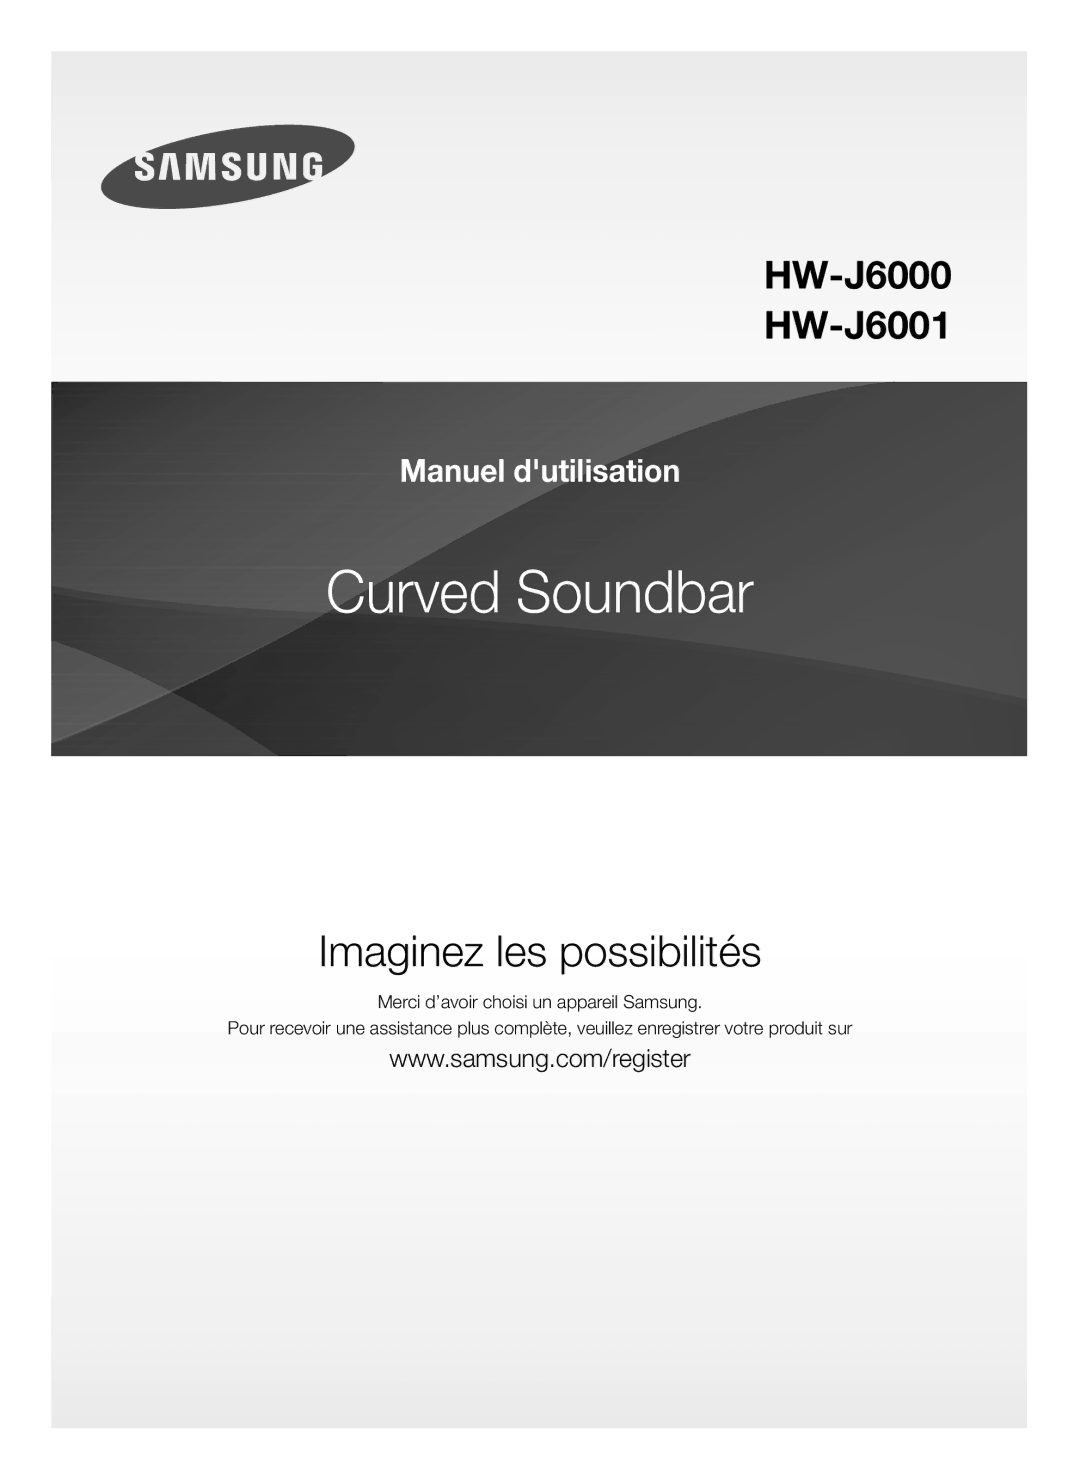 Samsung HW-J6000/ZF, HW-J6001/ZF manual Curved Soundbar 